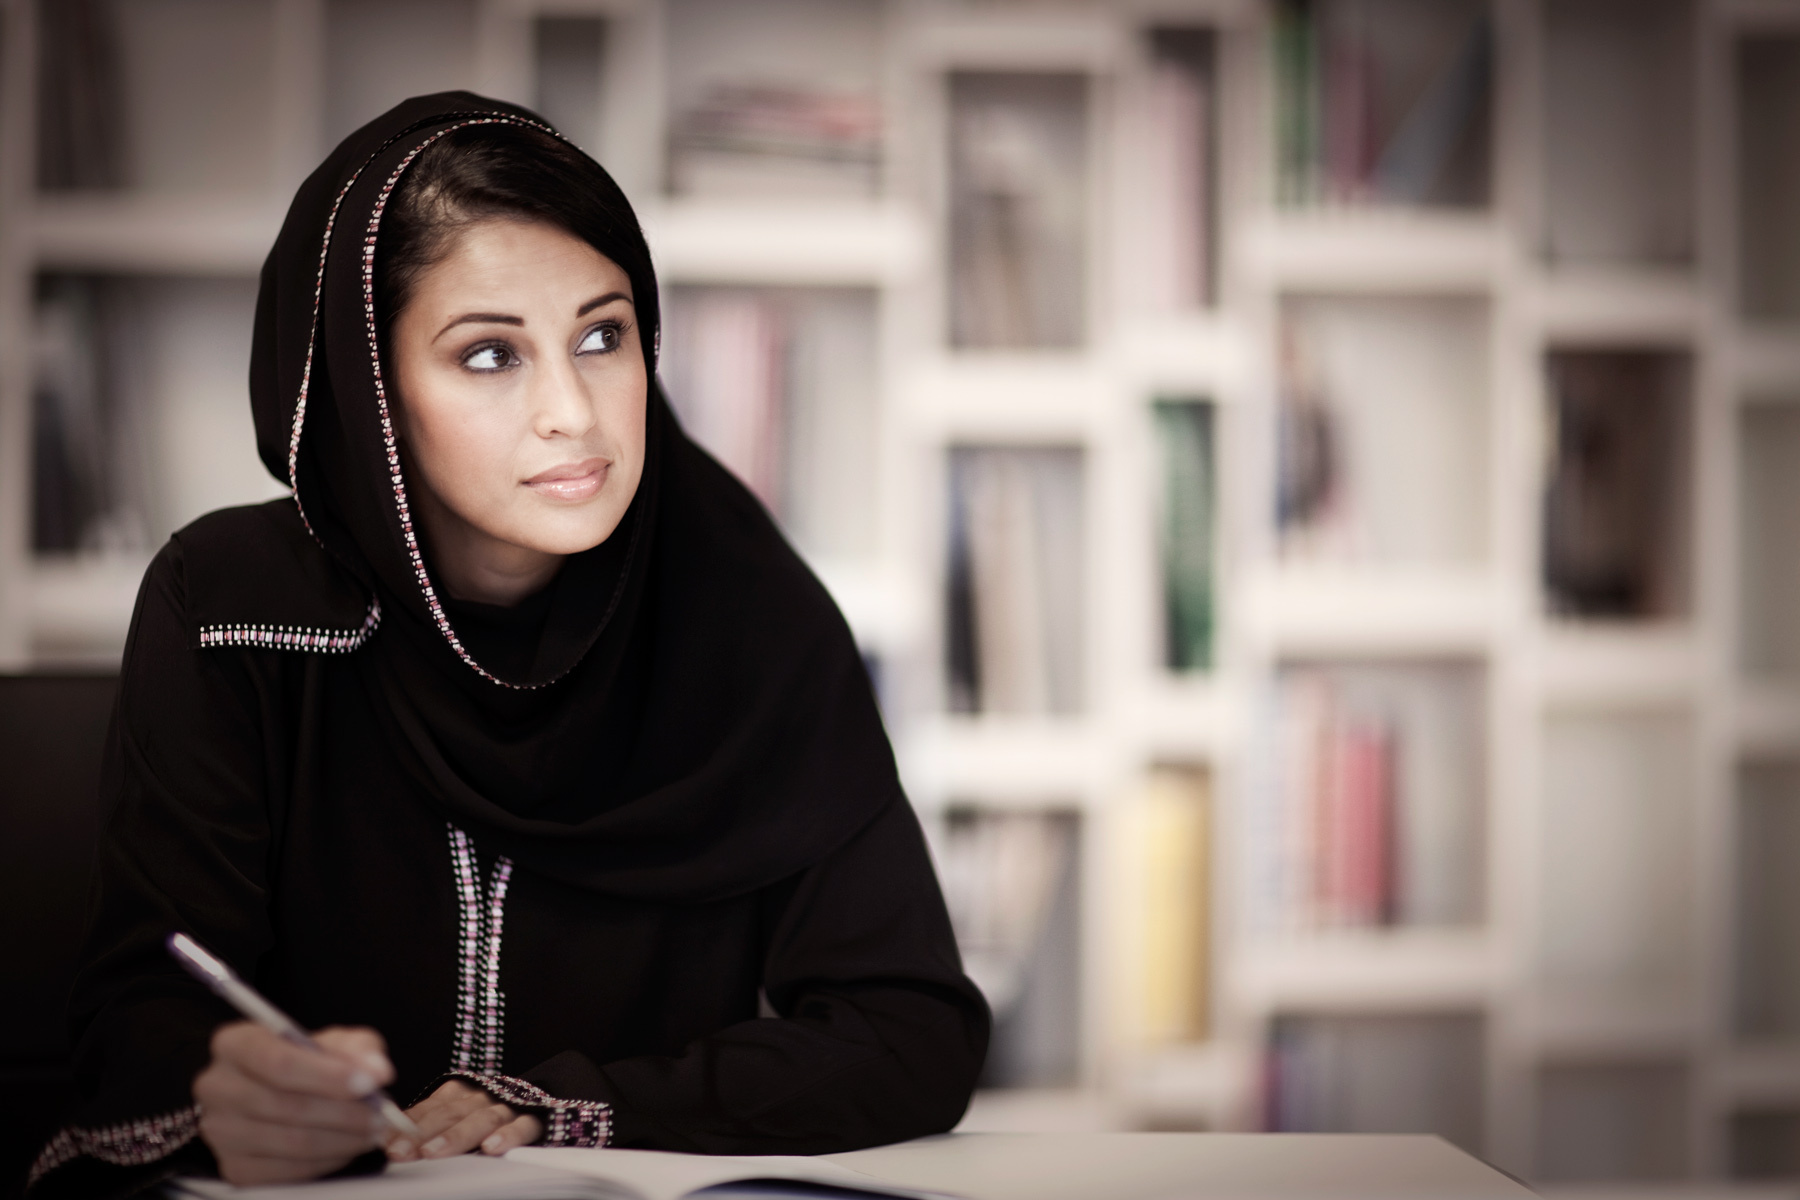 Qatar women launch start-ups despite social constraints